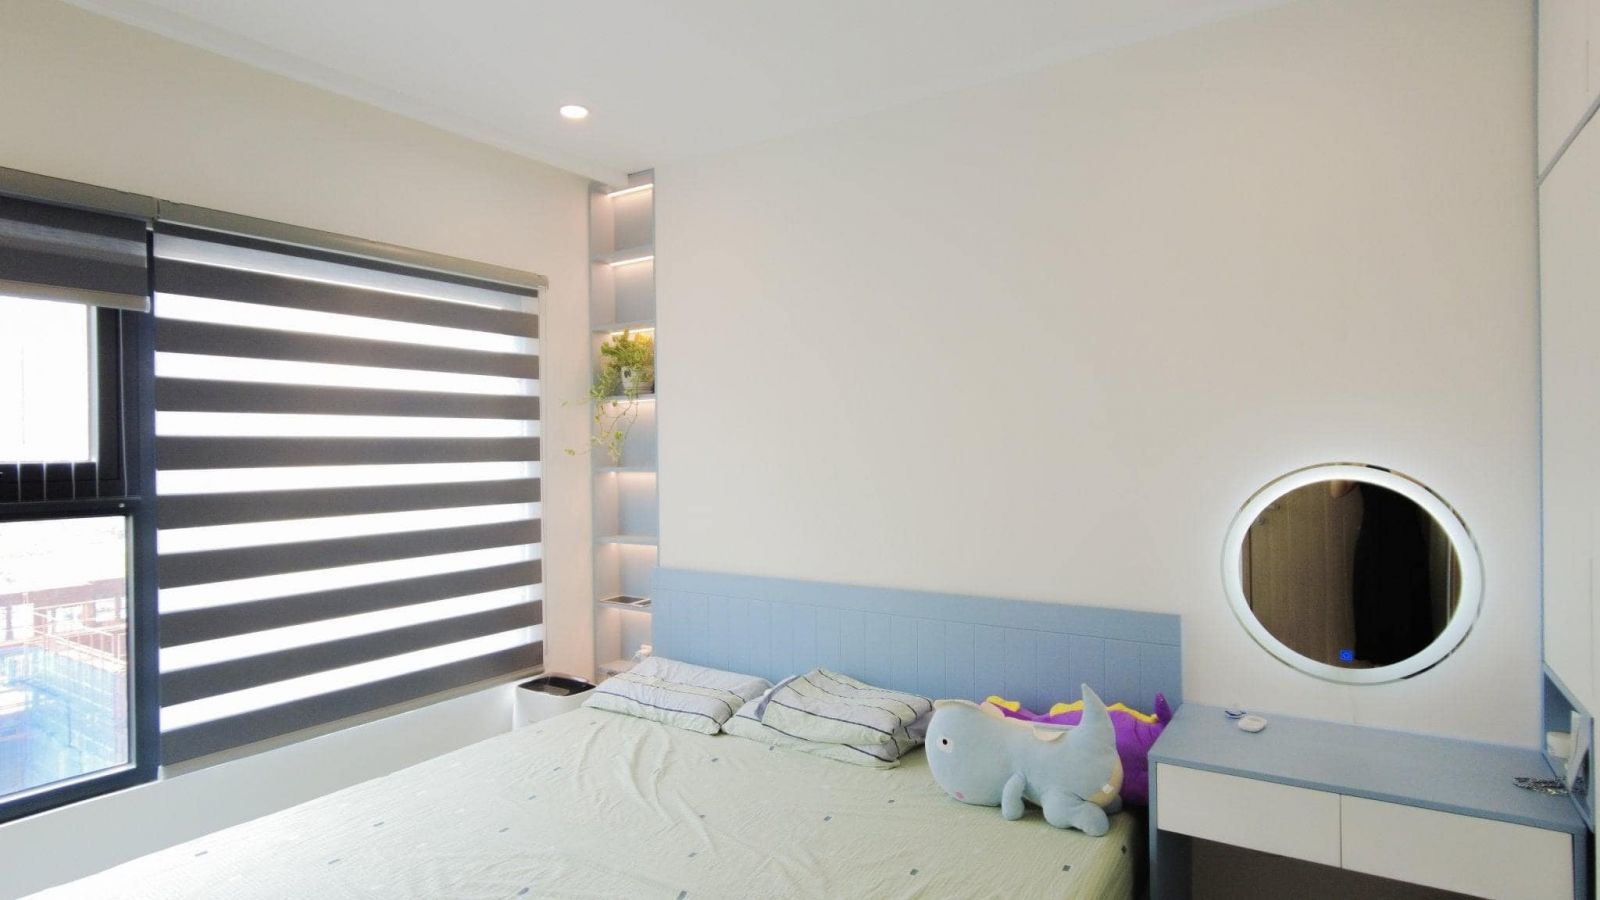 Căn hộ mang phong cách hiện đại, phòng ngủ bằng vách kính